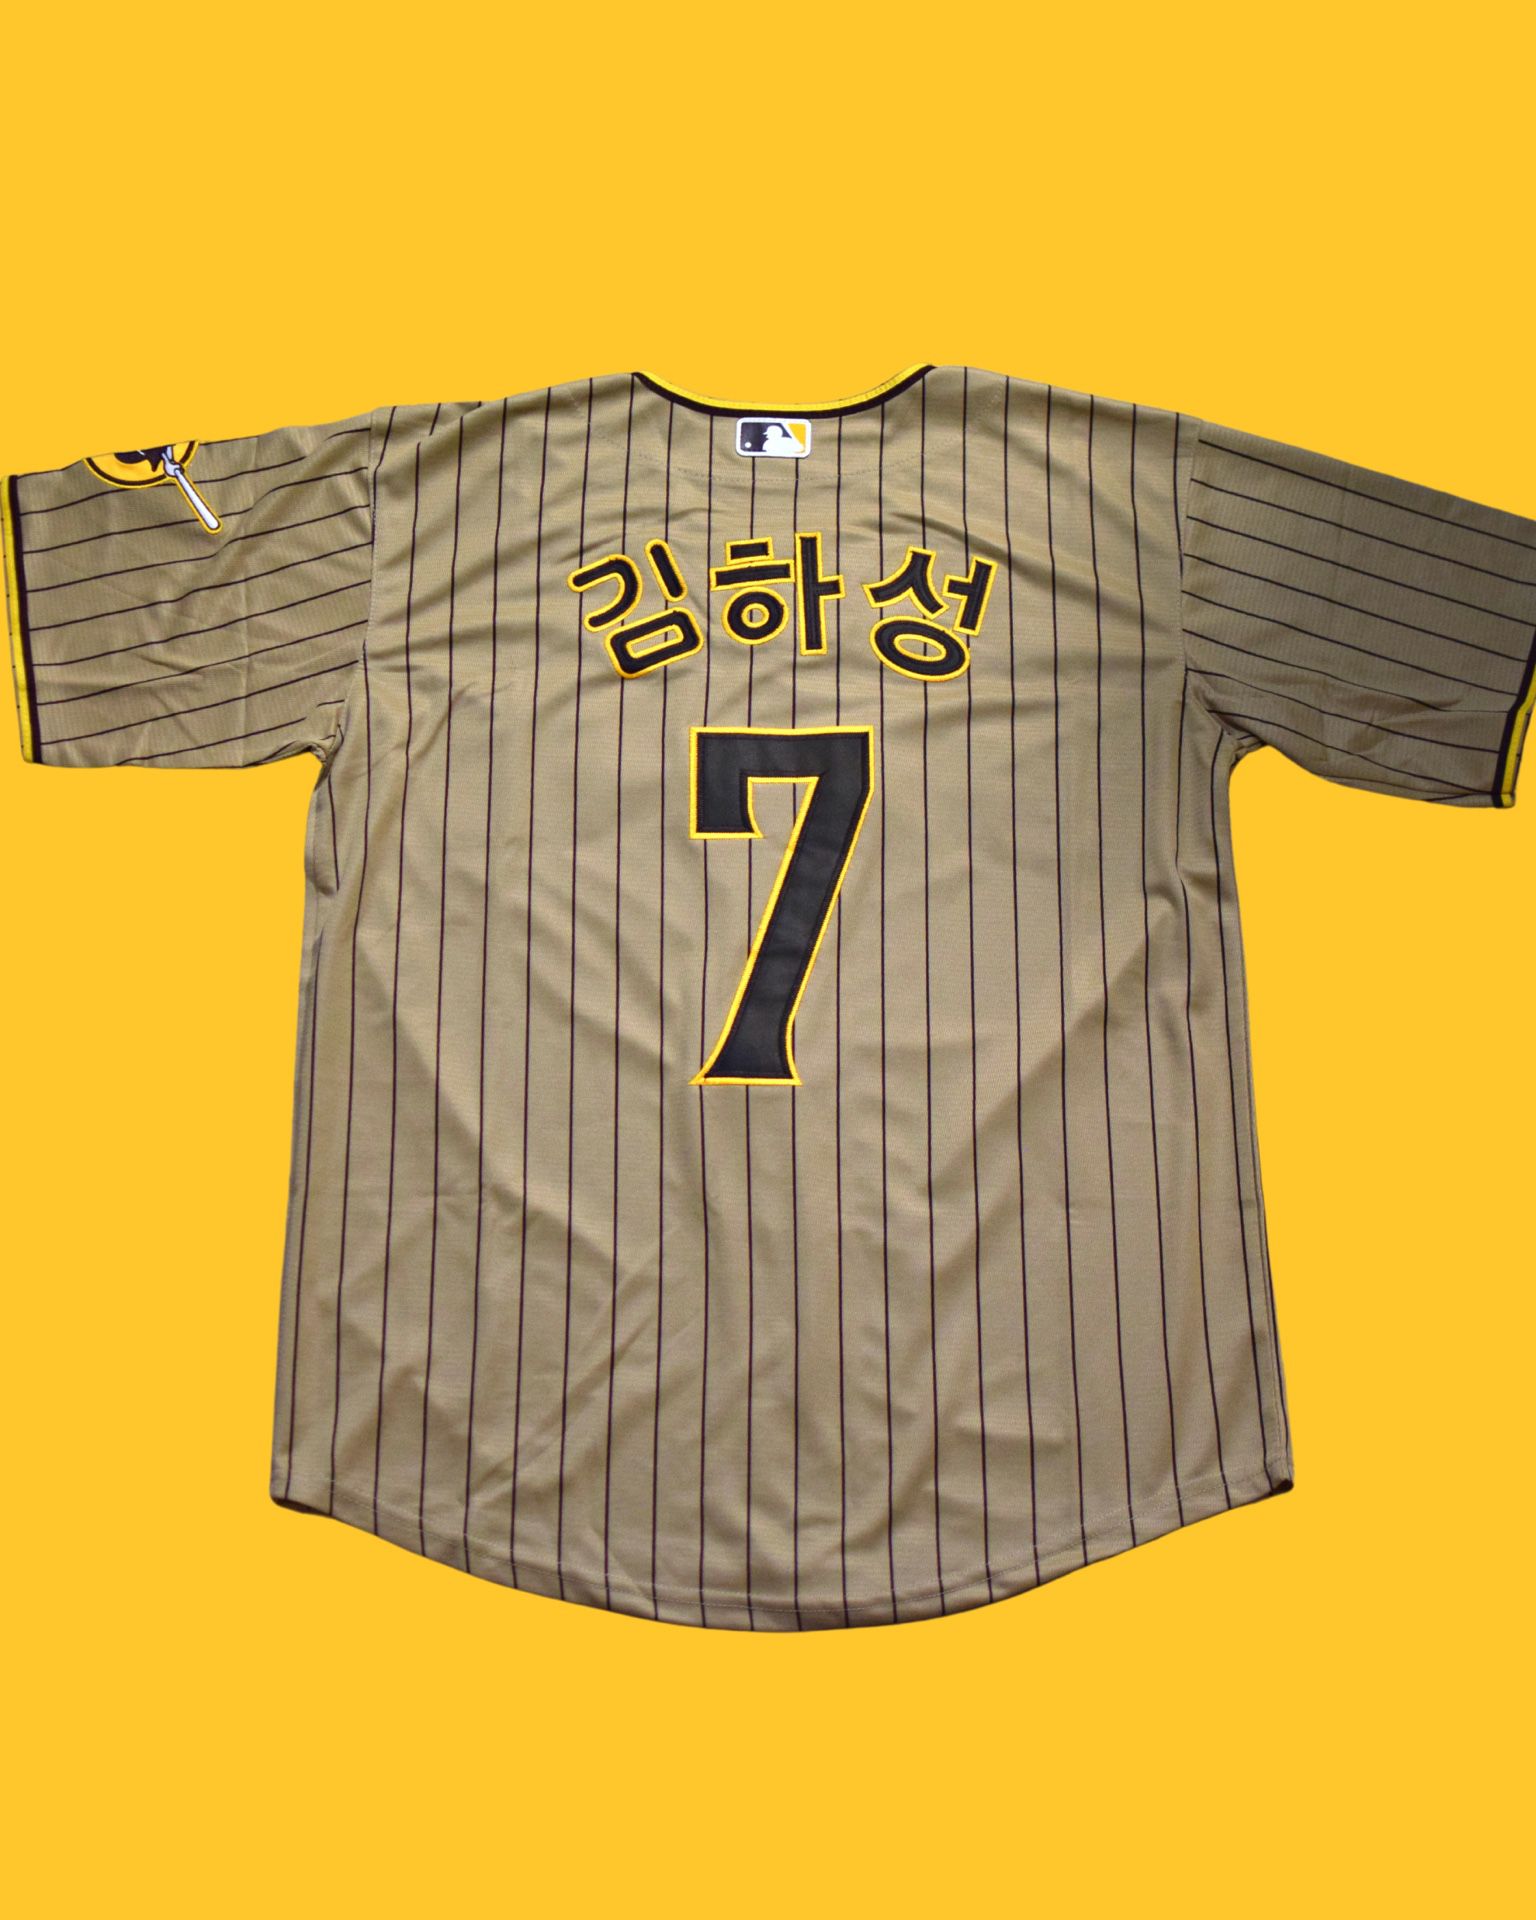 2023 Ha-Seong Kim San Diego Padres Tan Jersey - S/M/L/XL